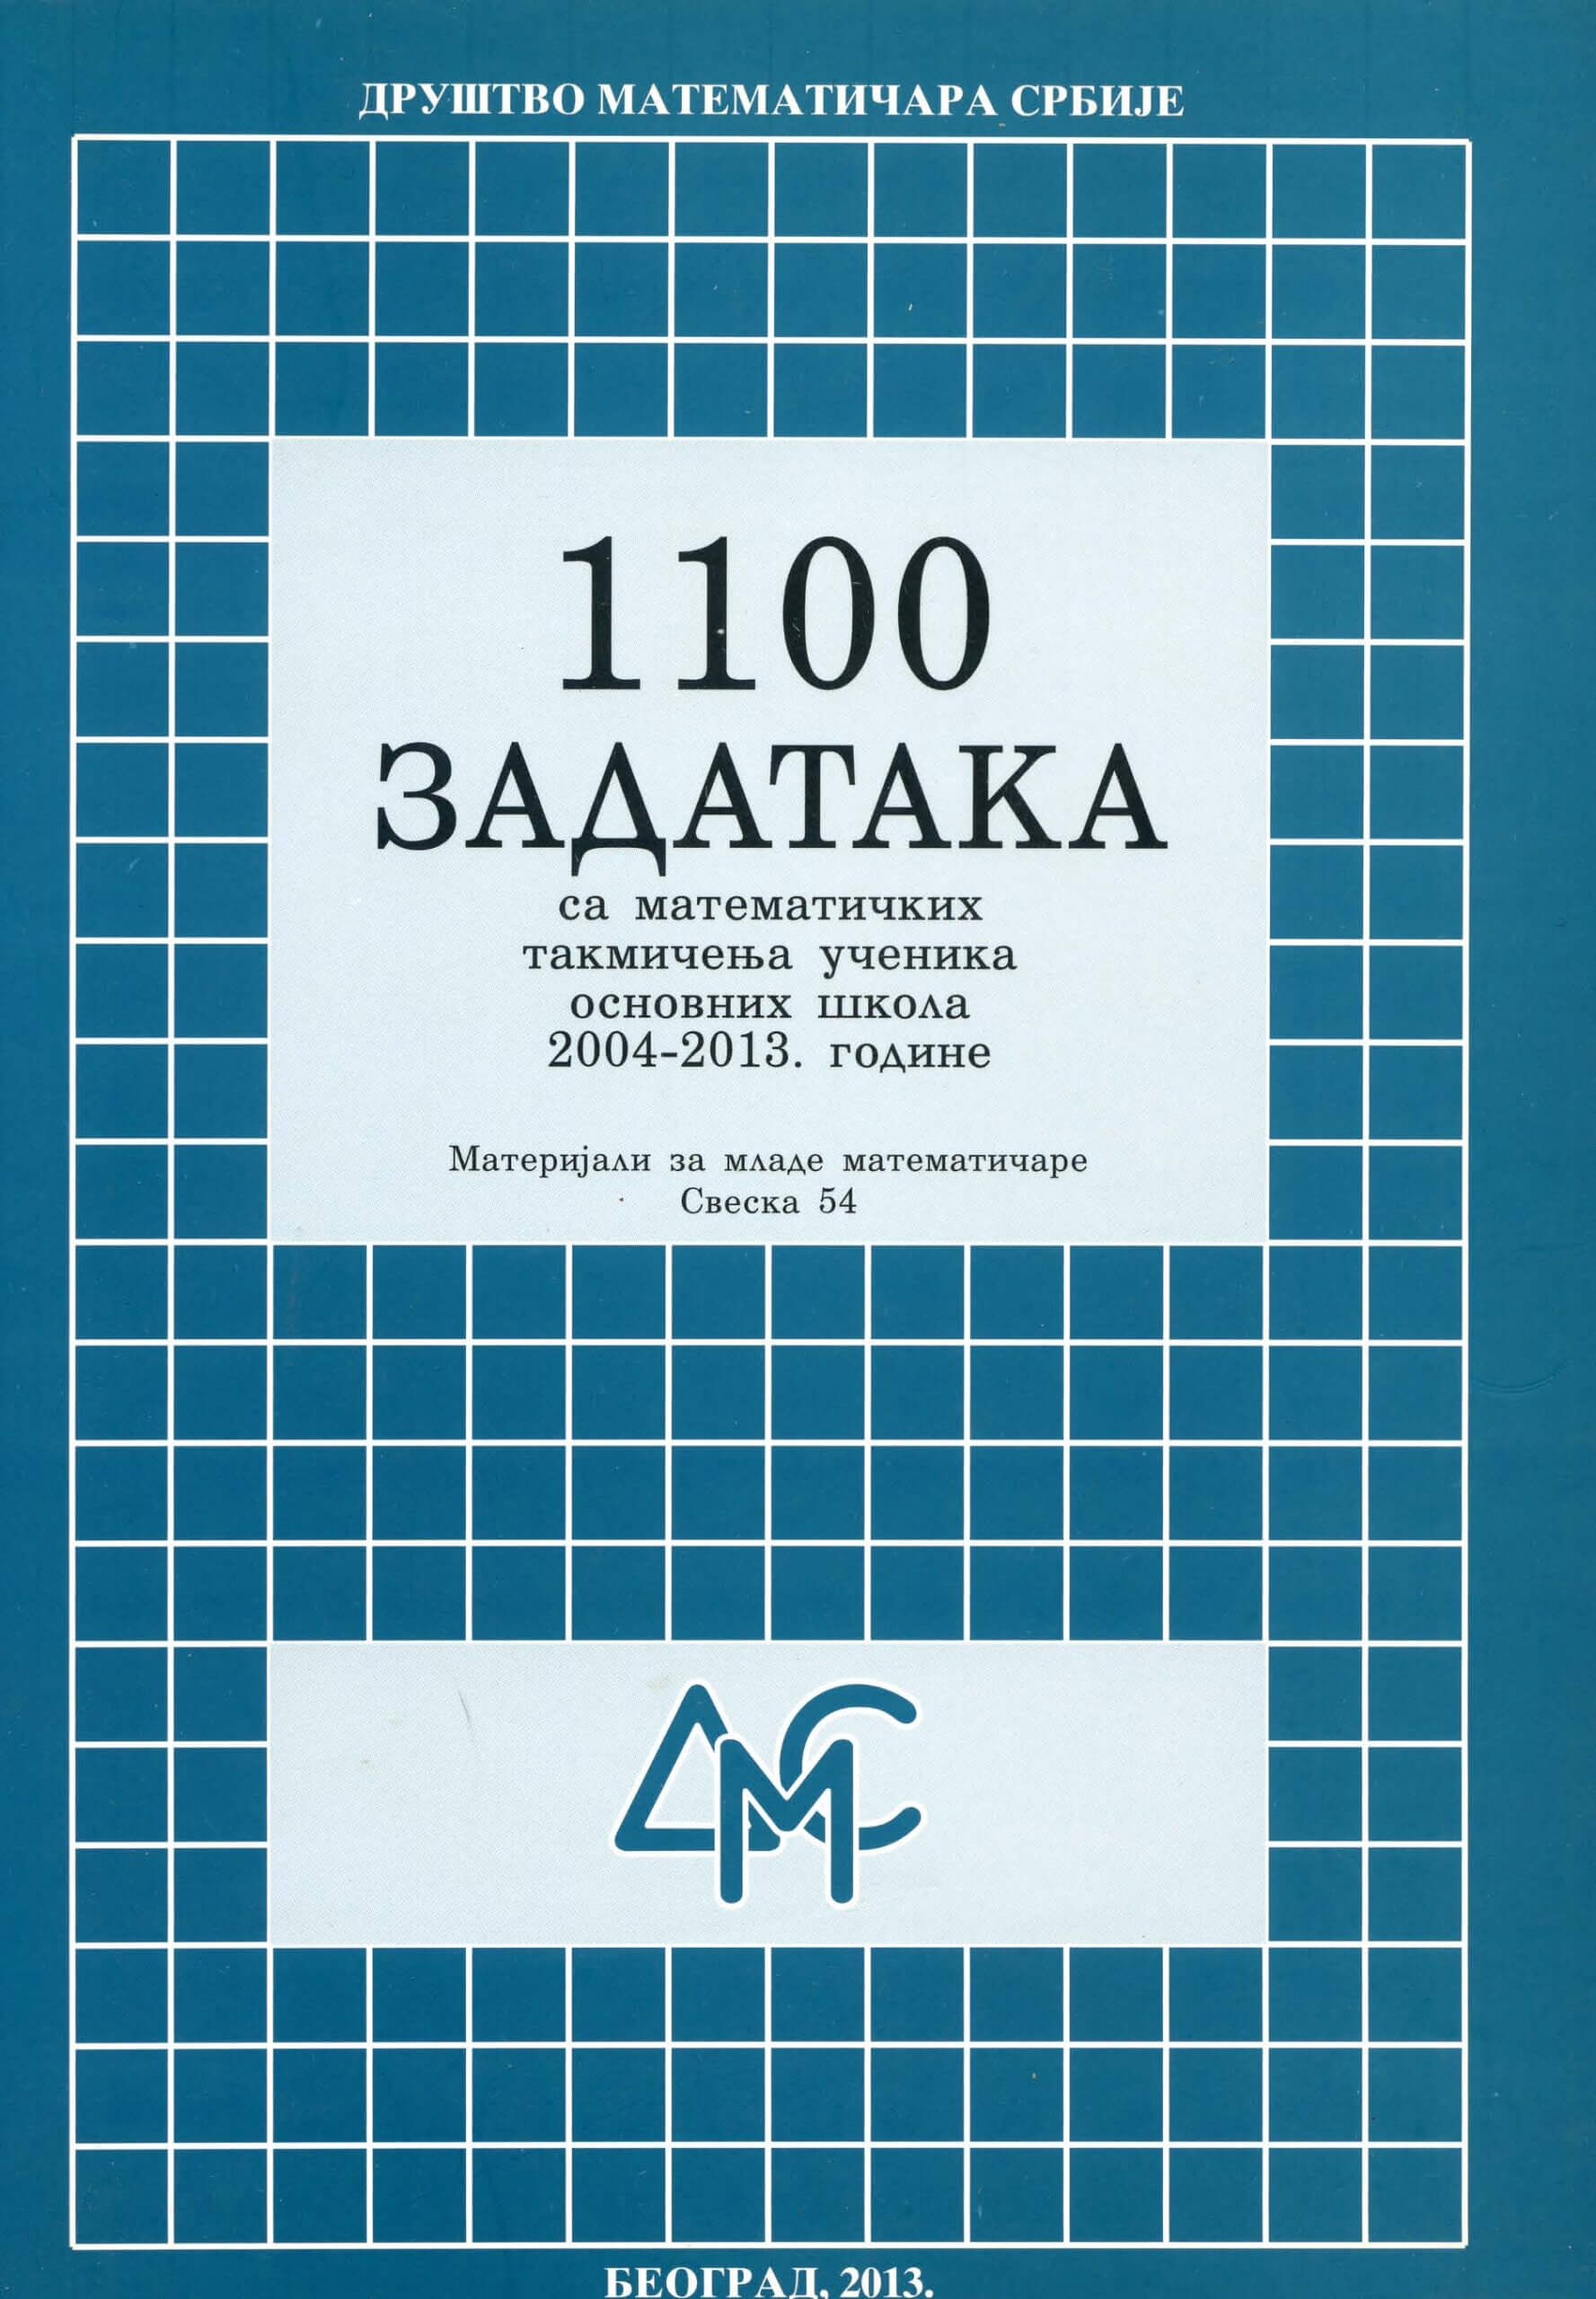 1100 ЗАДАТАКА са математичких такмичења ученика основних школа 2004-2013. године